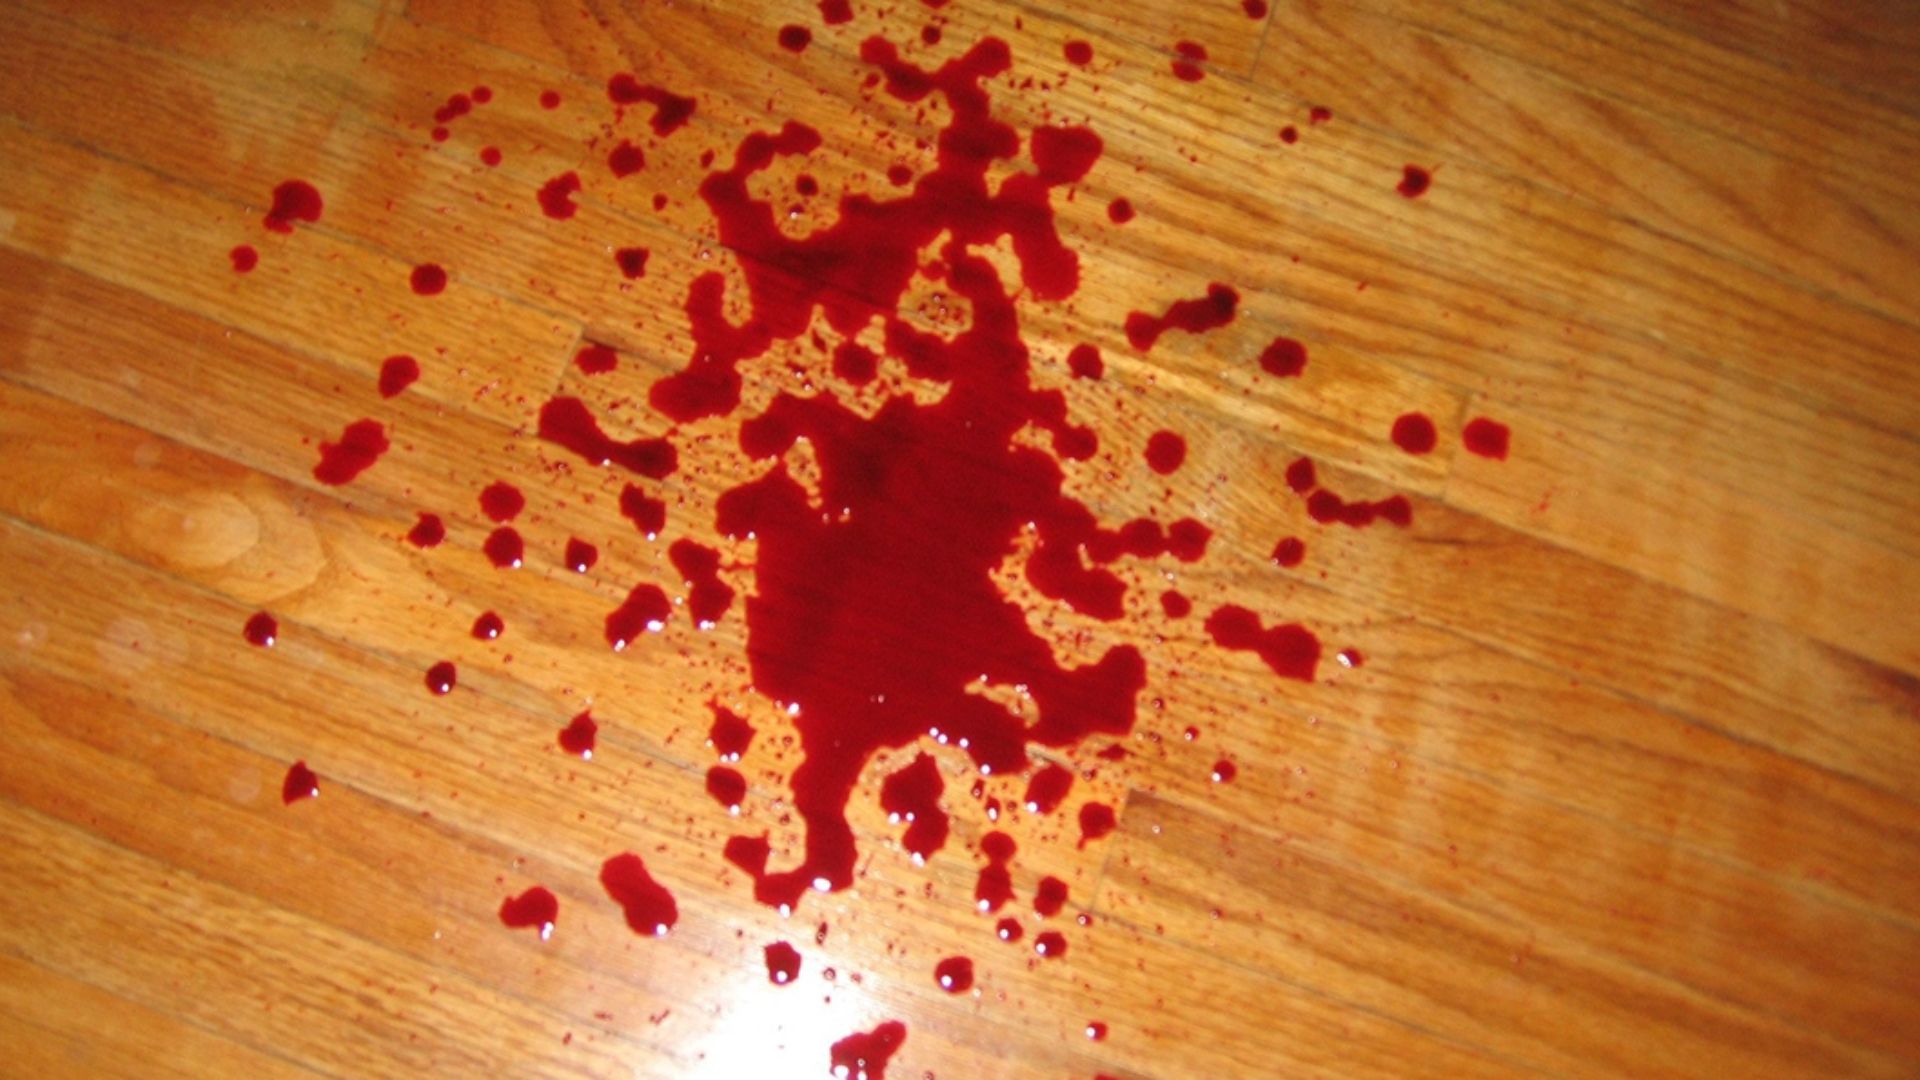 Drops Of Blood On Wooden Floor